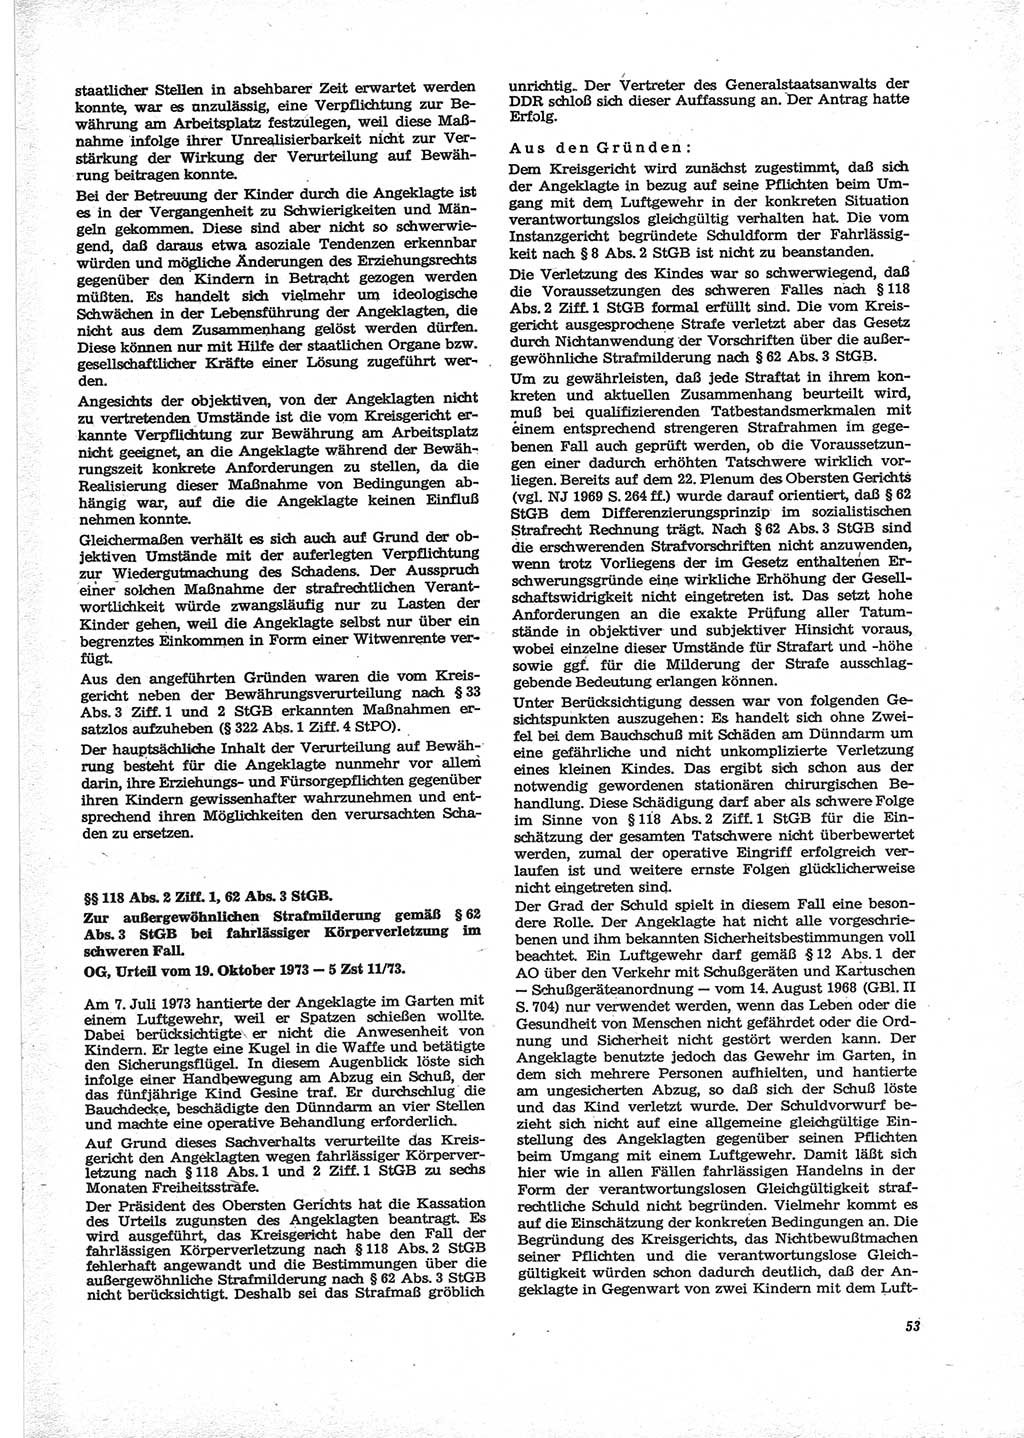 Neue Justiz (NJ), Zeitschrift für Recht und Rechtswissenschaft [Deutsche Demokratische Republik (DDR)], 28. Jahrgang 1974, Seite 53 (NJ DDR 1974, S. 53)